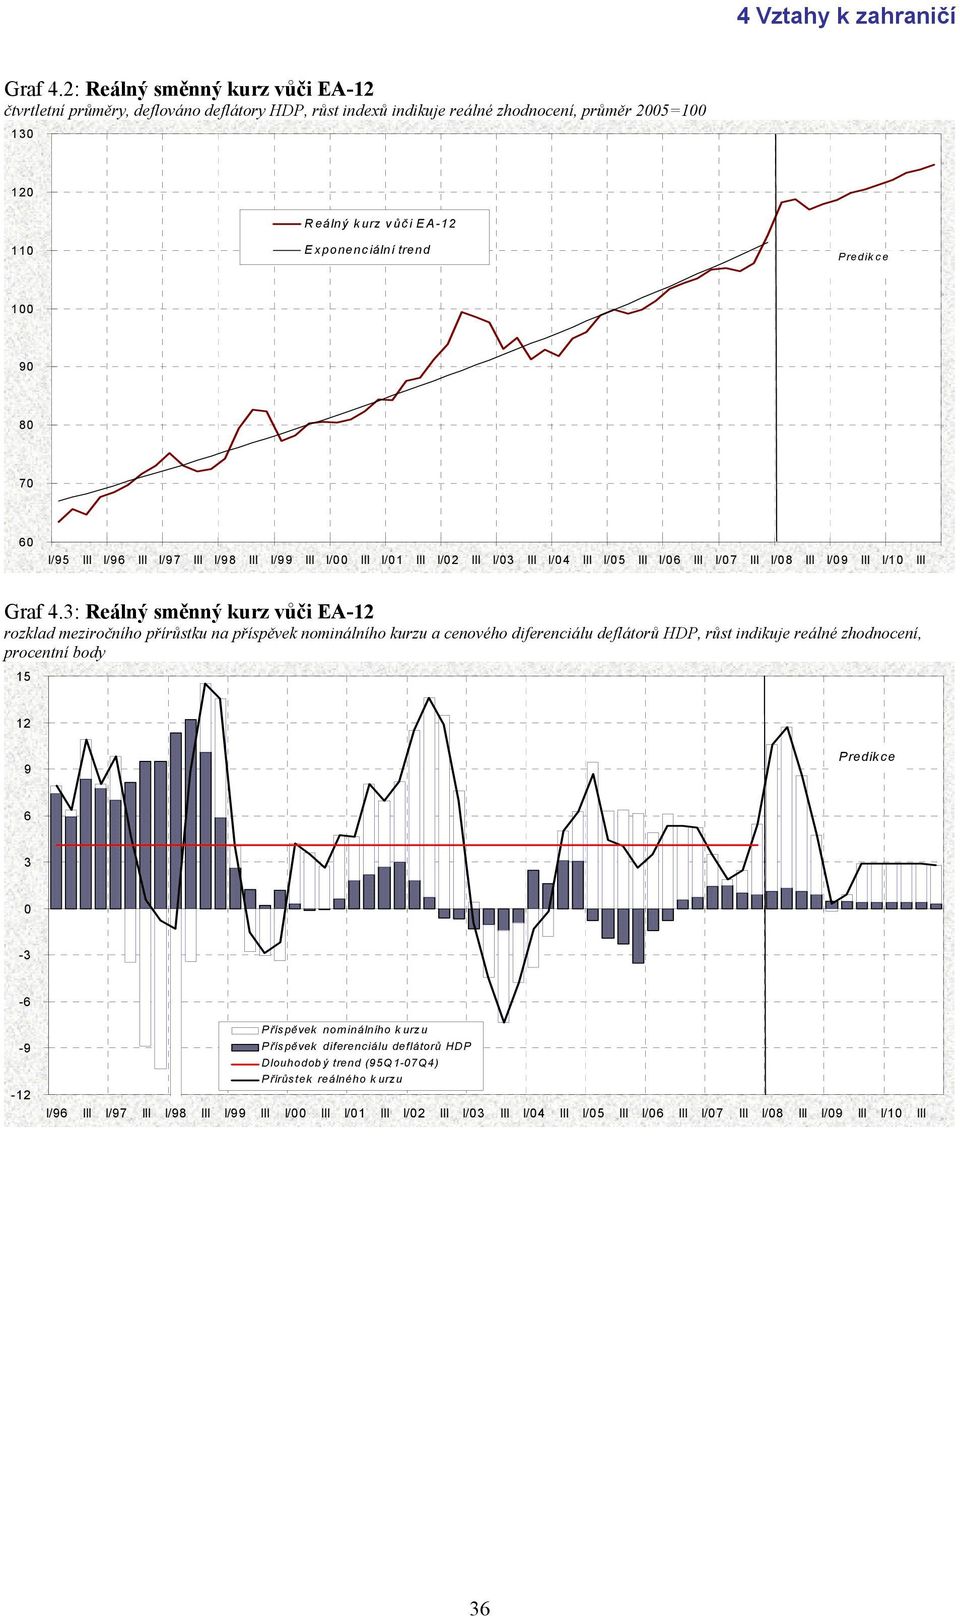 : Reálný směnný kurz vůči EA-1 rozklad meziročního přírůstku na příspěvek nominálního kurzu a cenového diferenciálu deflátorů HDP, růst indikuje reálné zhodnocení, procentní body 15 1 -